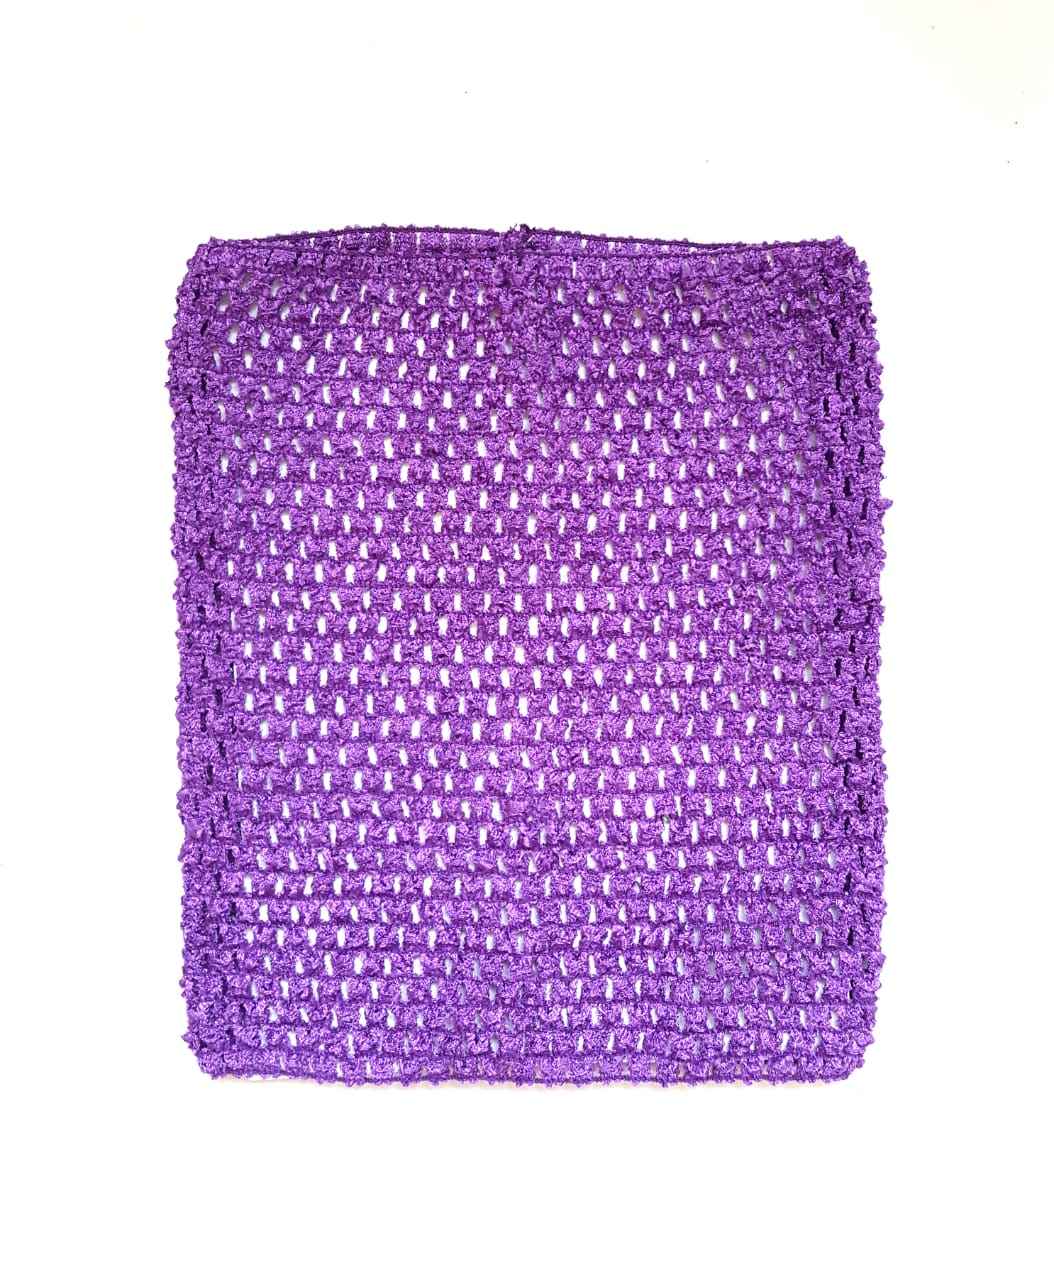 Ткань Caramelkalife Топ-резинка, размер 23*20 см. Цвет Фиолетовый.